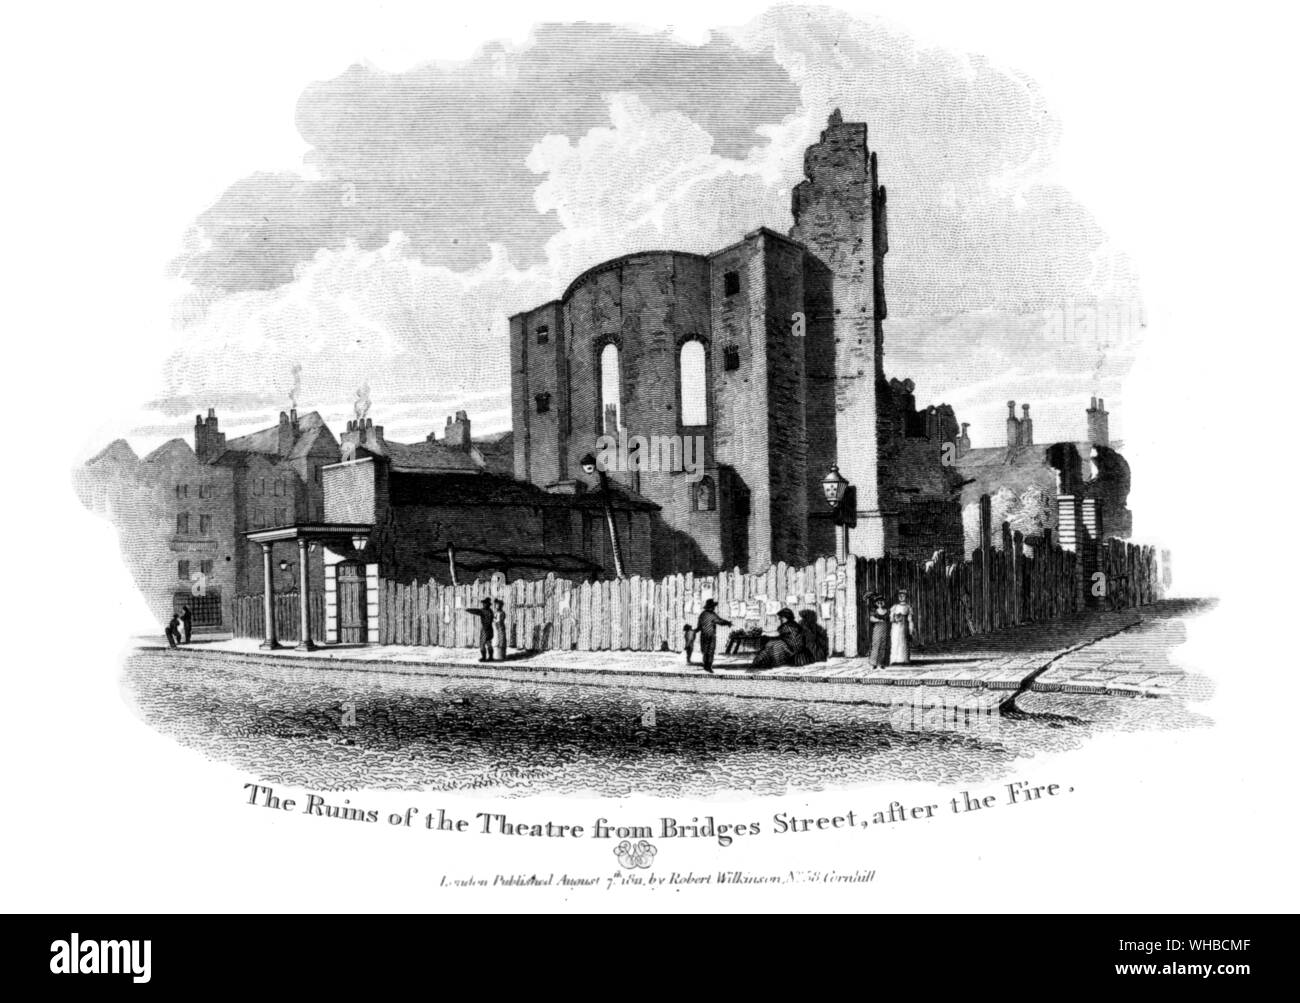 Ansicht des Drury Lane die Ruinen des Theaters von Brücken Straße nach dem Brand vom 24. Februar 1809. Gestochen von Weise nach Wichelo Stockfoto